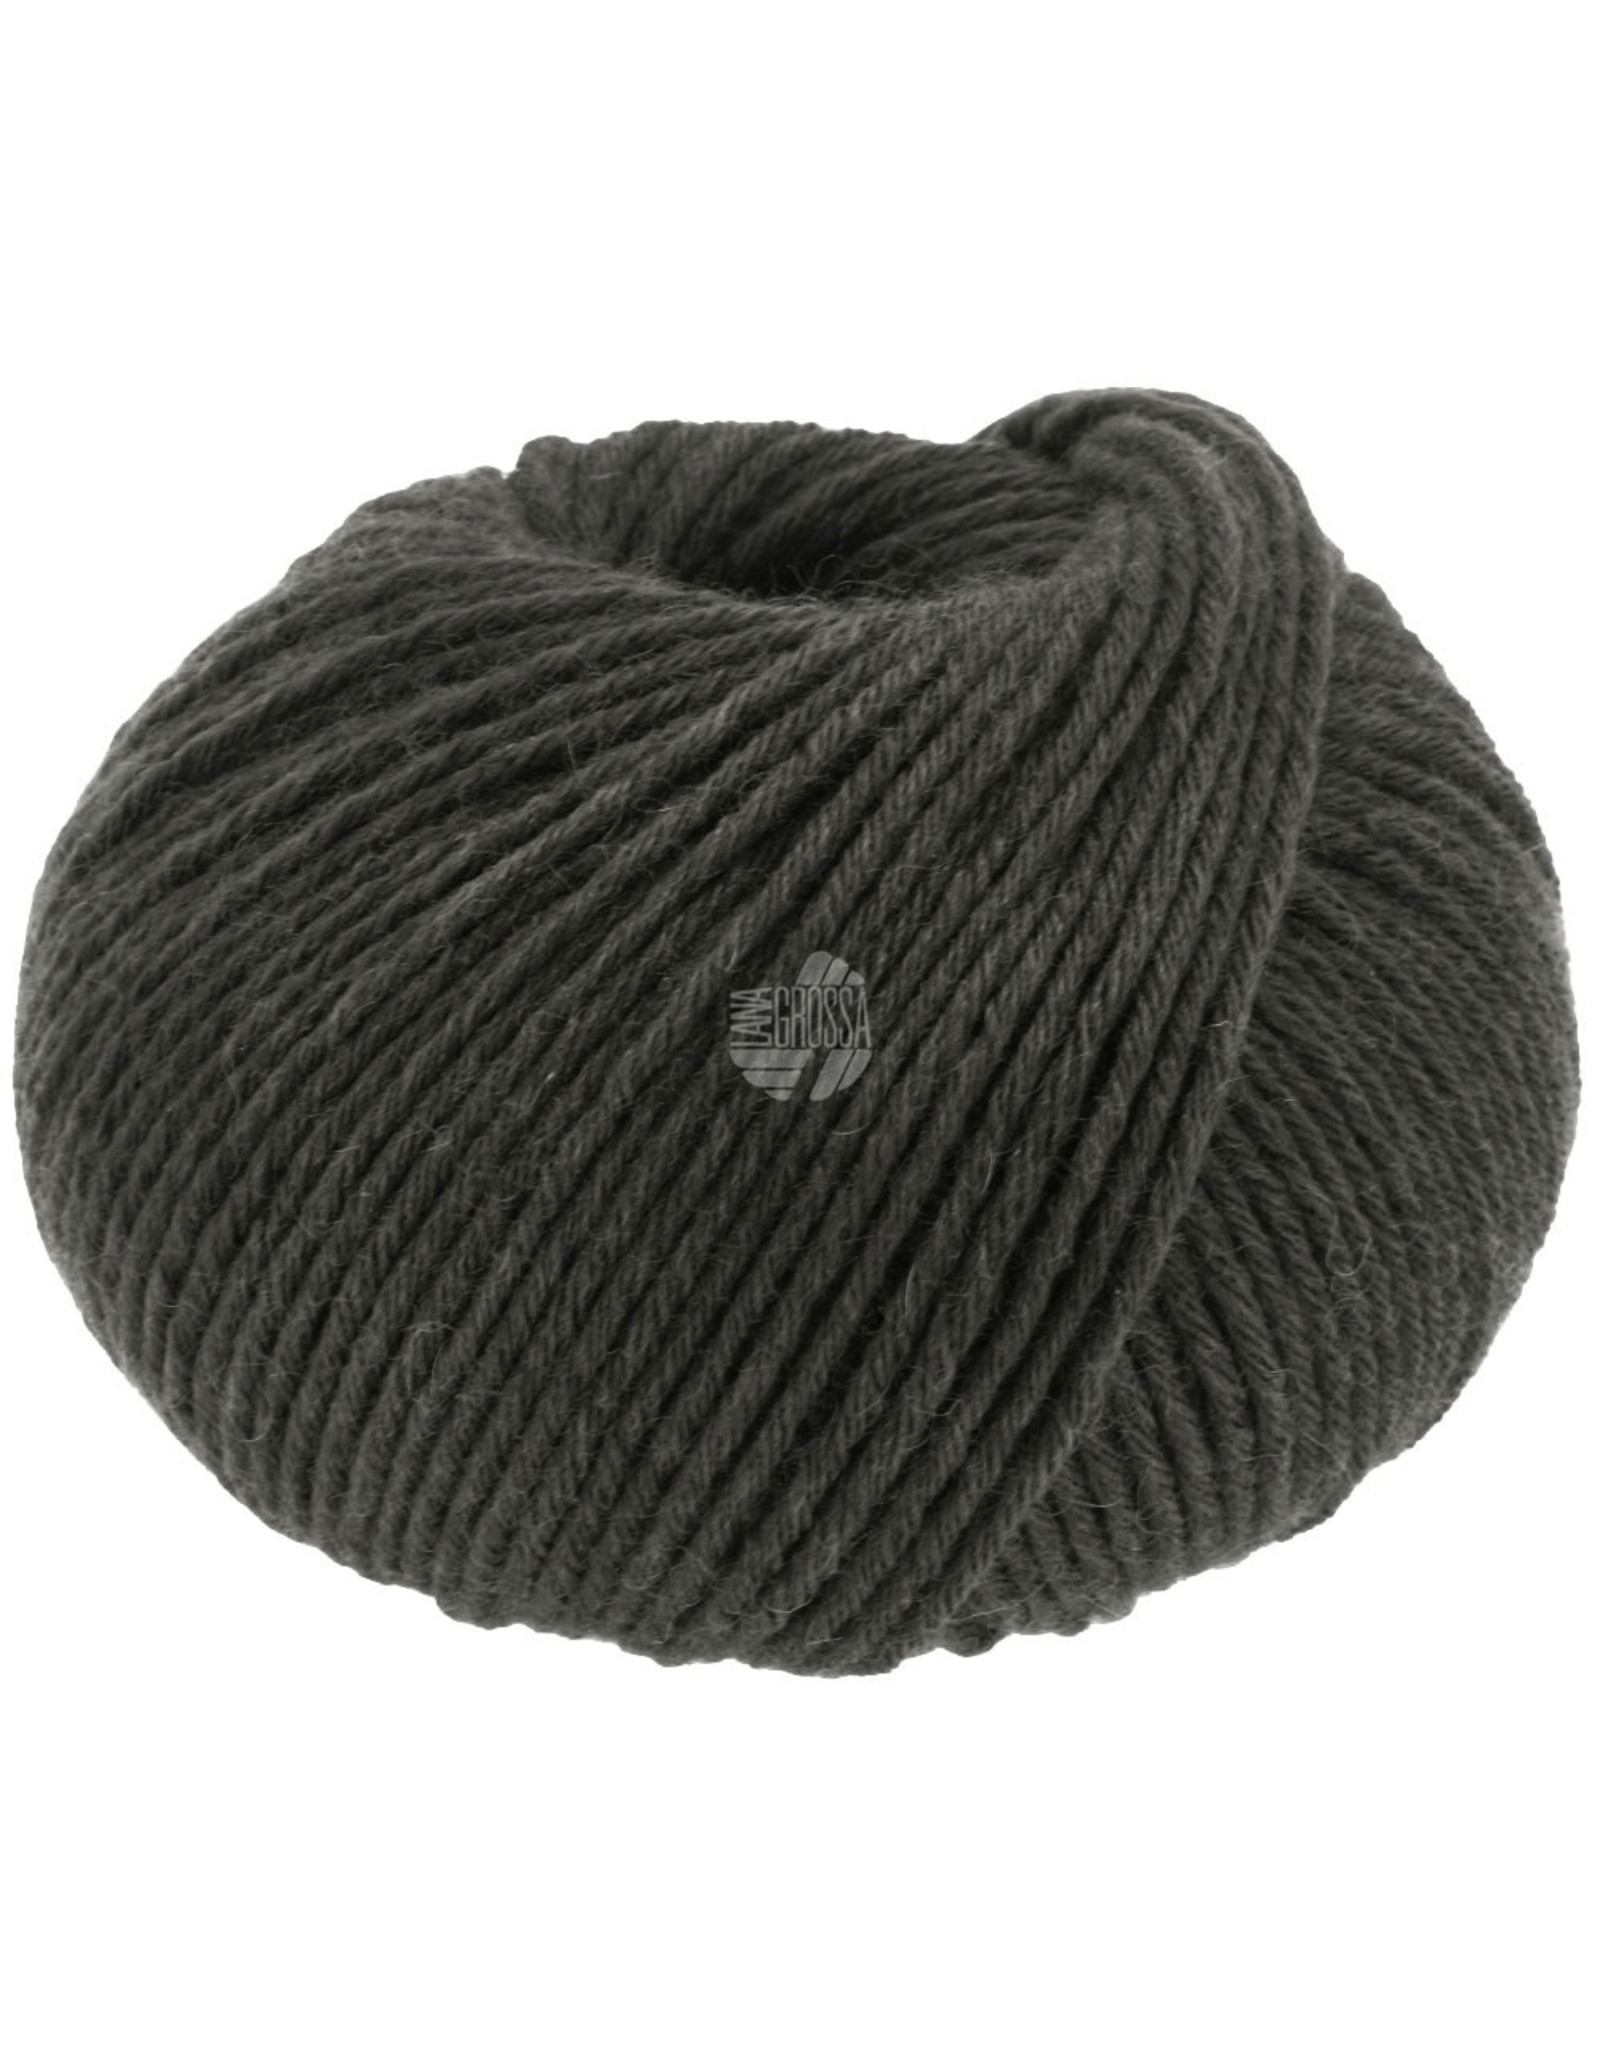 Lana Grossa Lana Grossa Nordic Merino Wool 8